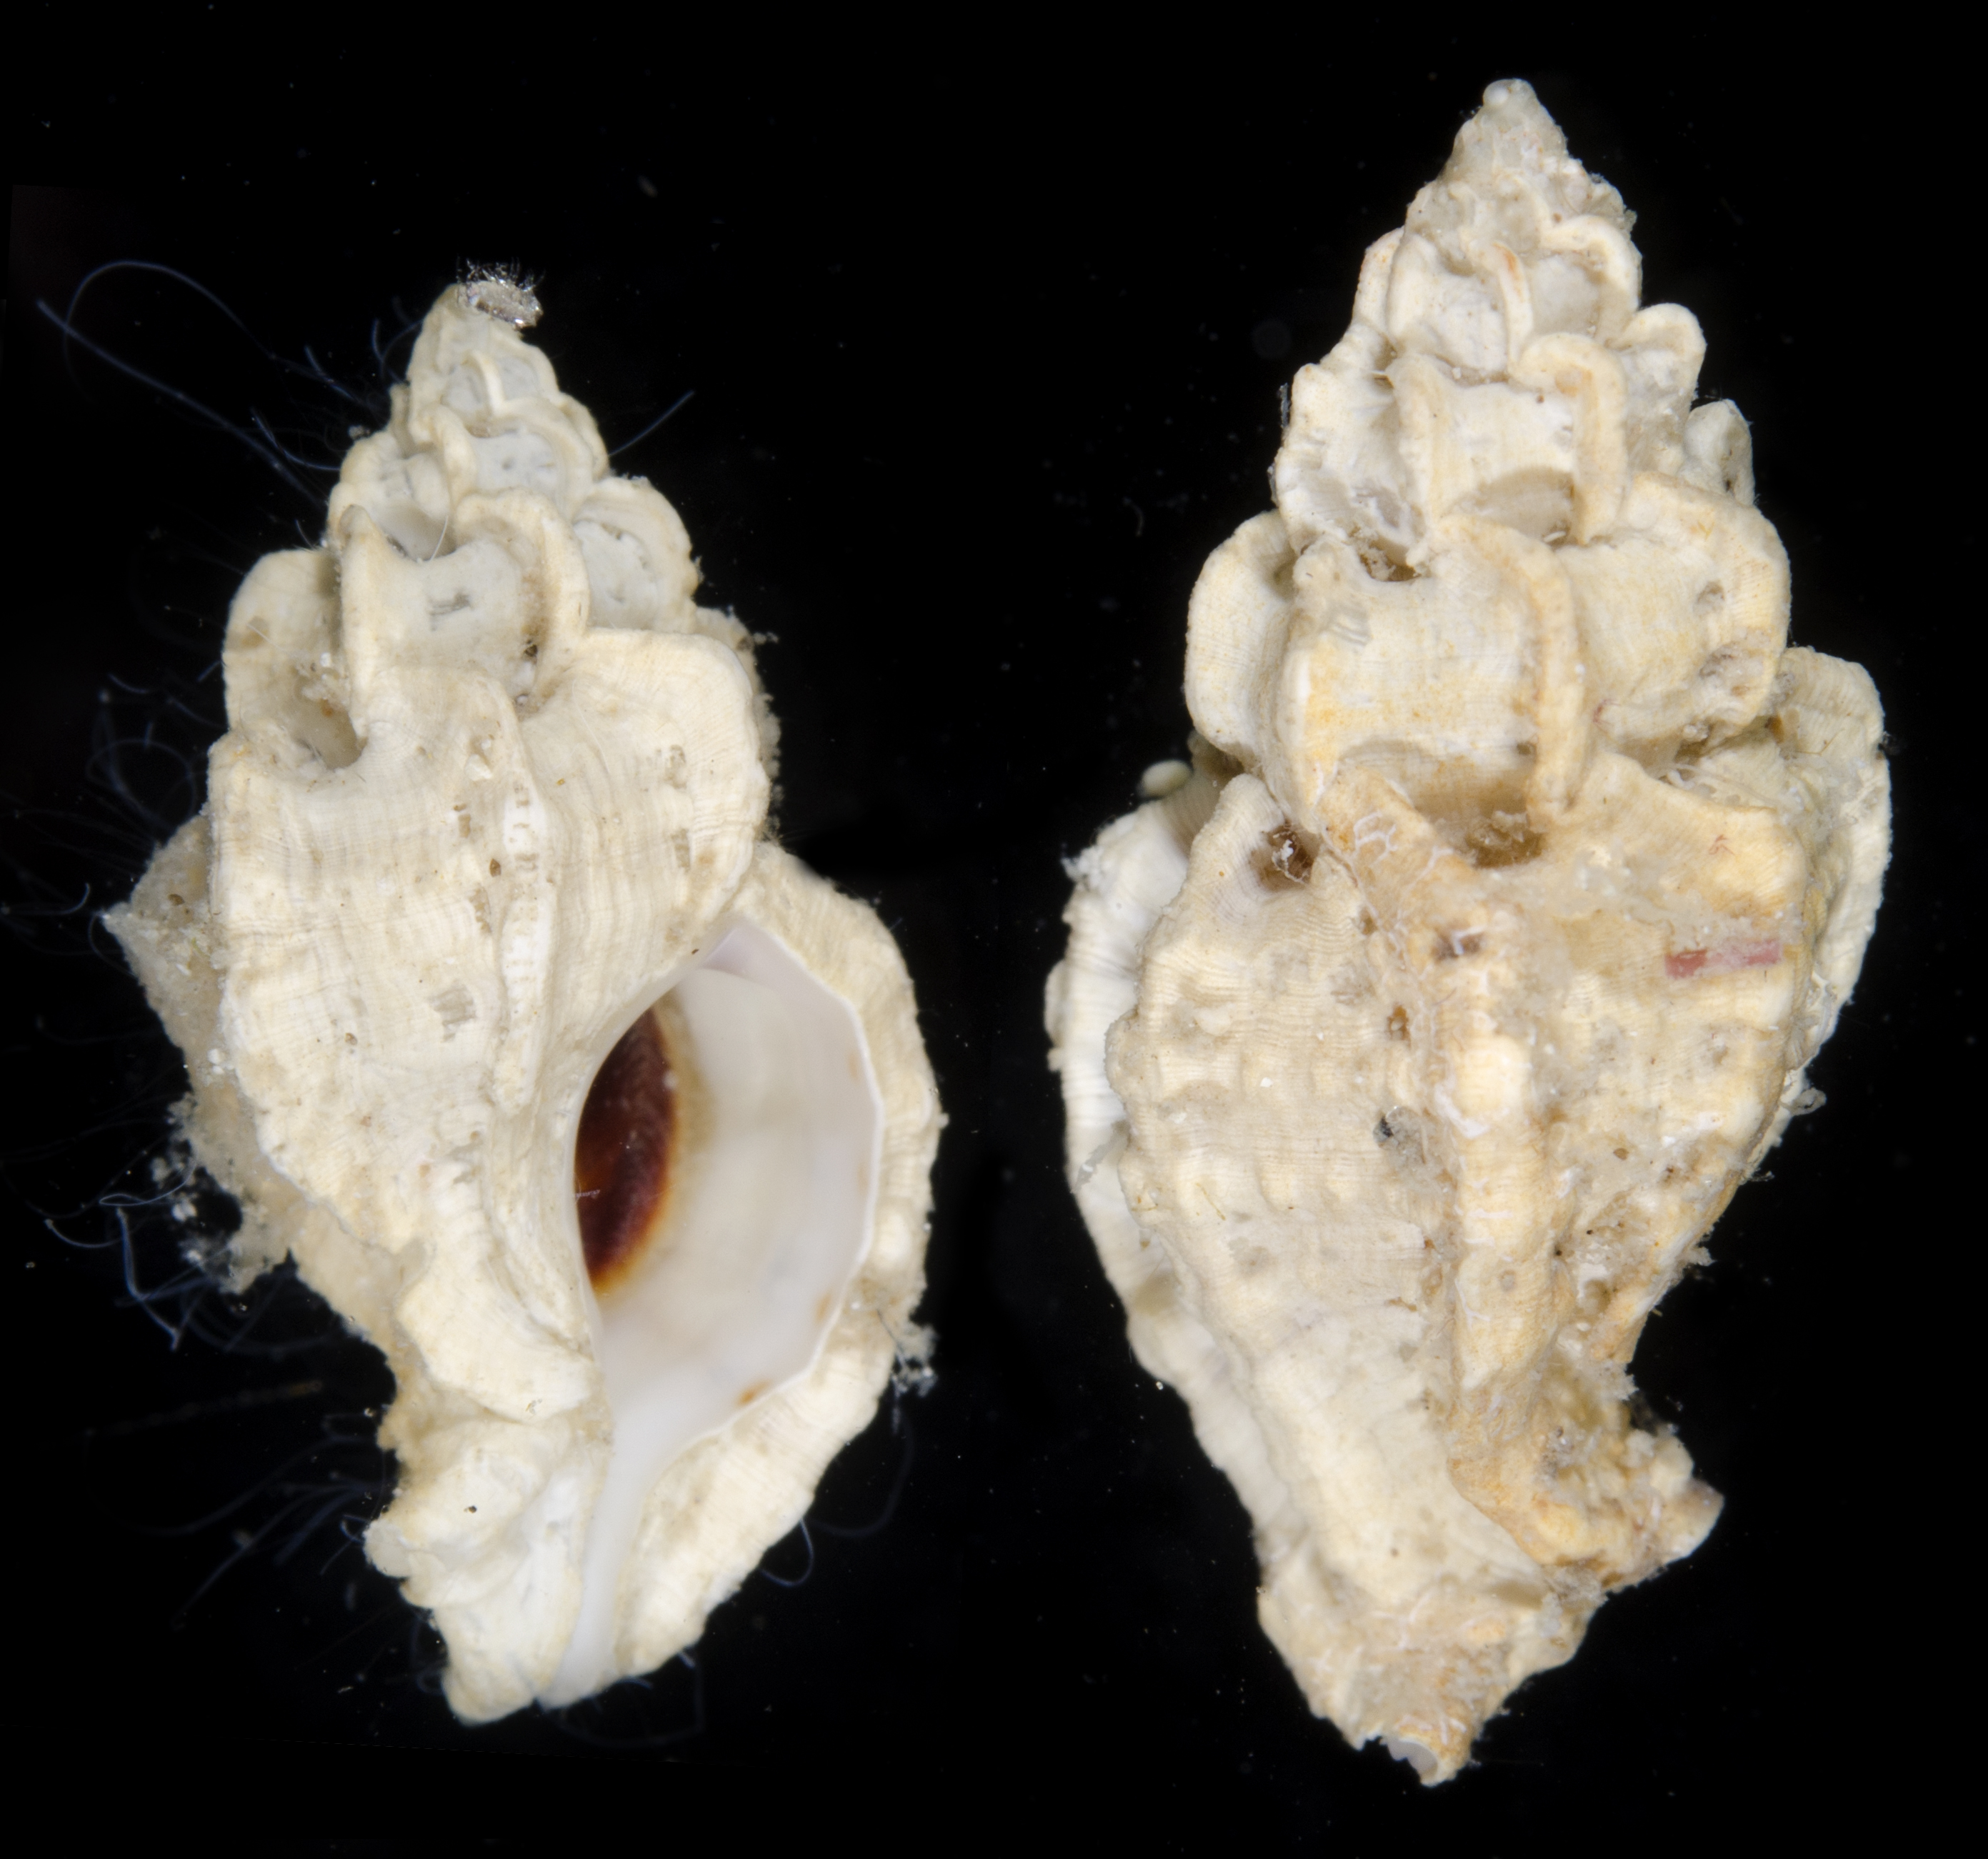 Dermomurex pauperculus image